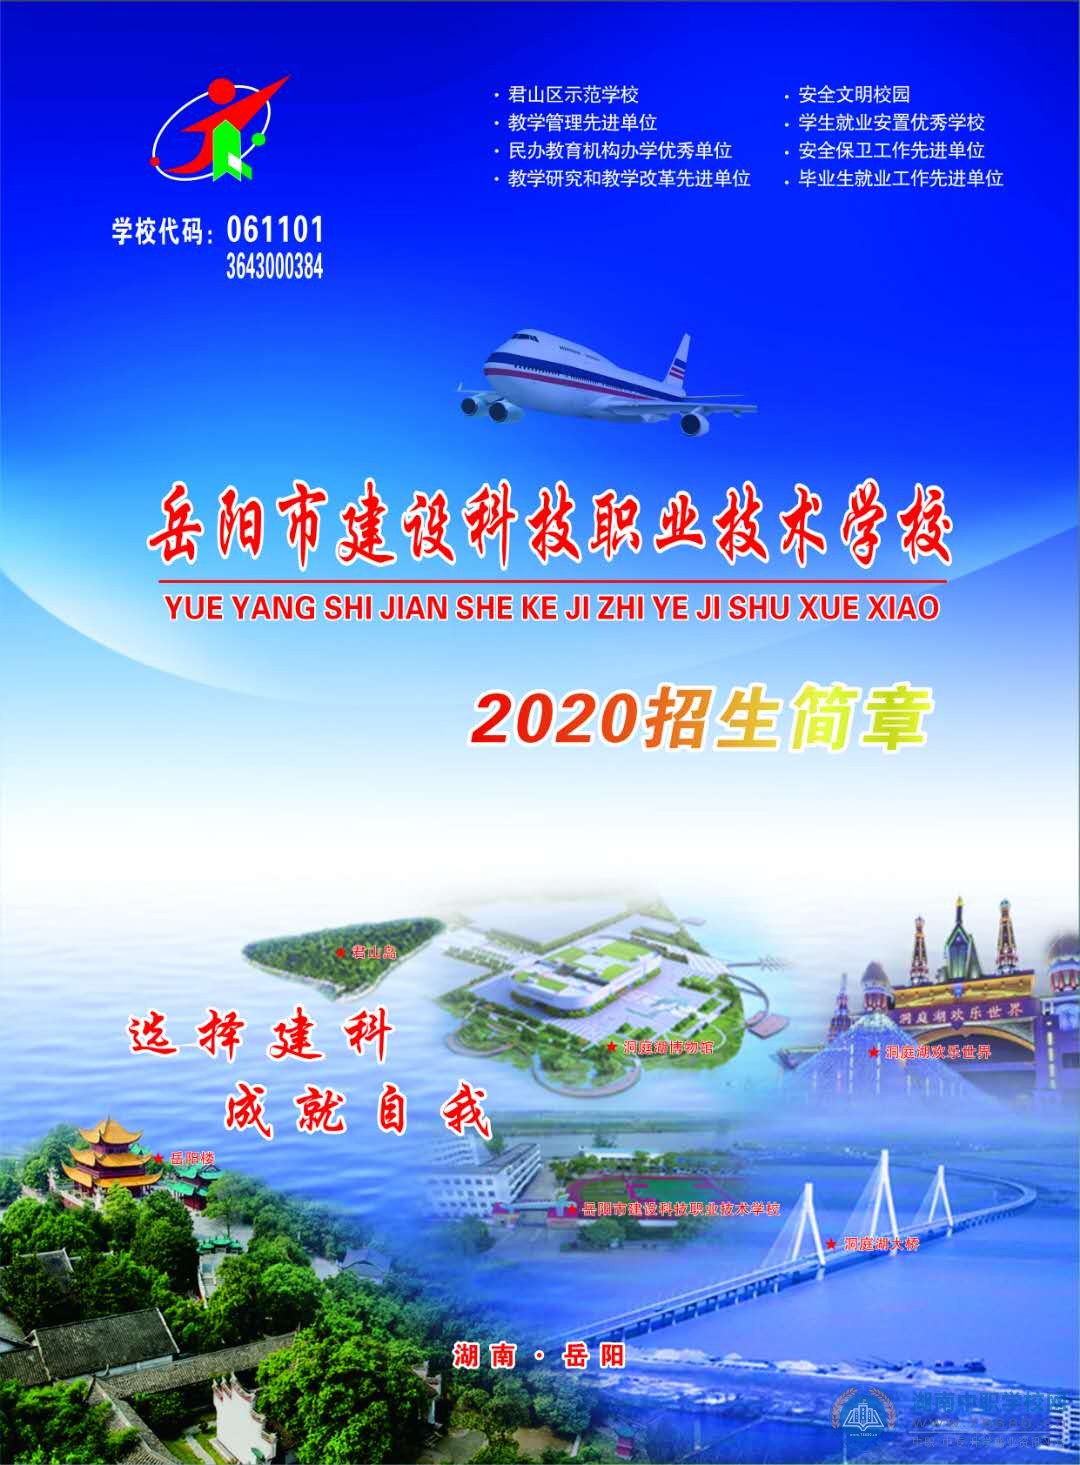 
岳阳市建设科技职业技术学校2020年招生简章